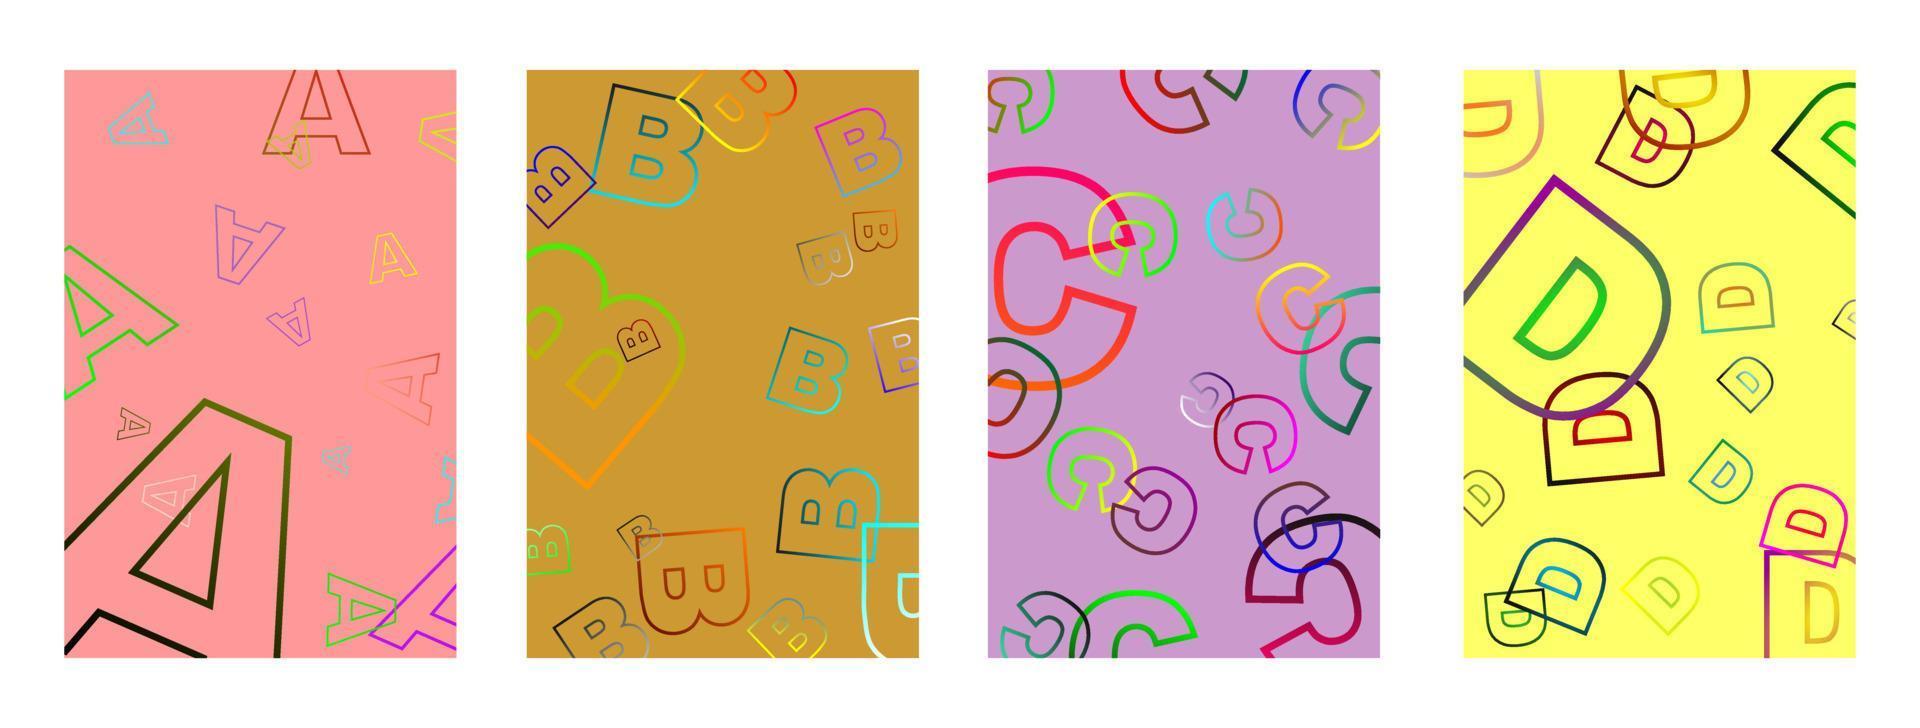 minimaal omslagontwerp. kleurrijke halftonen. modern achtergrondsjabloonontwerp voor web. vector illustratie